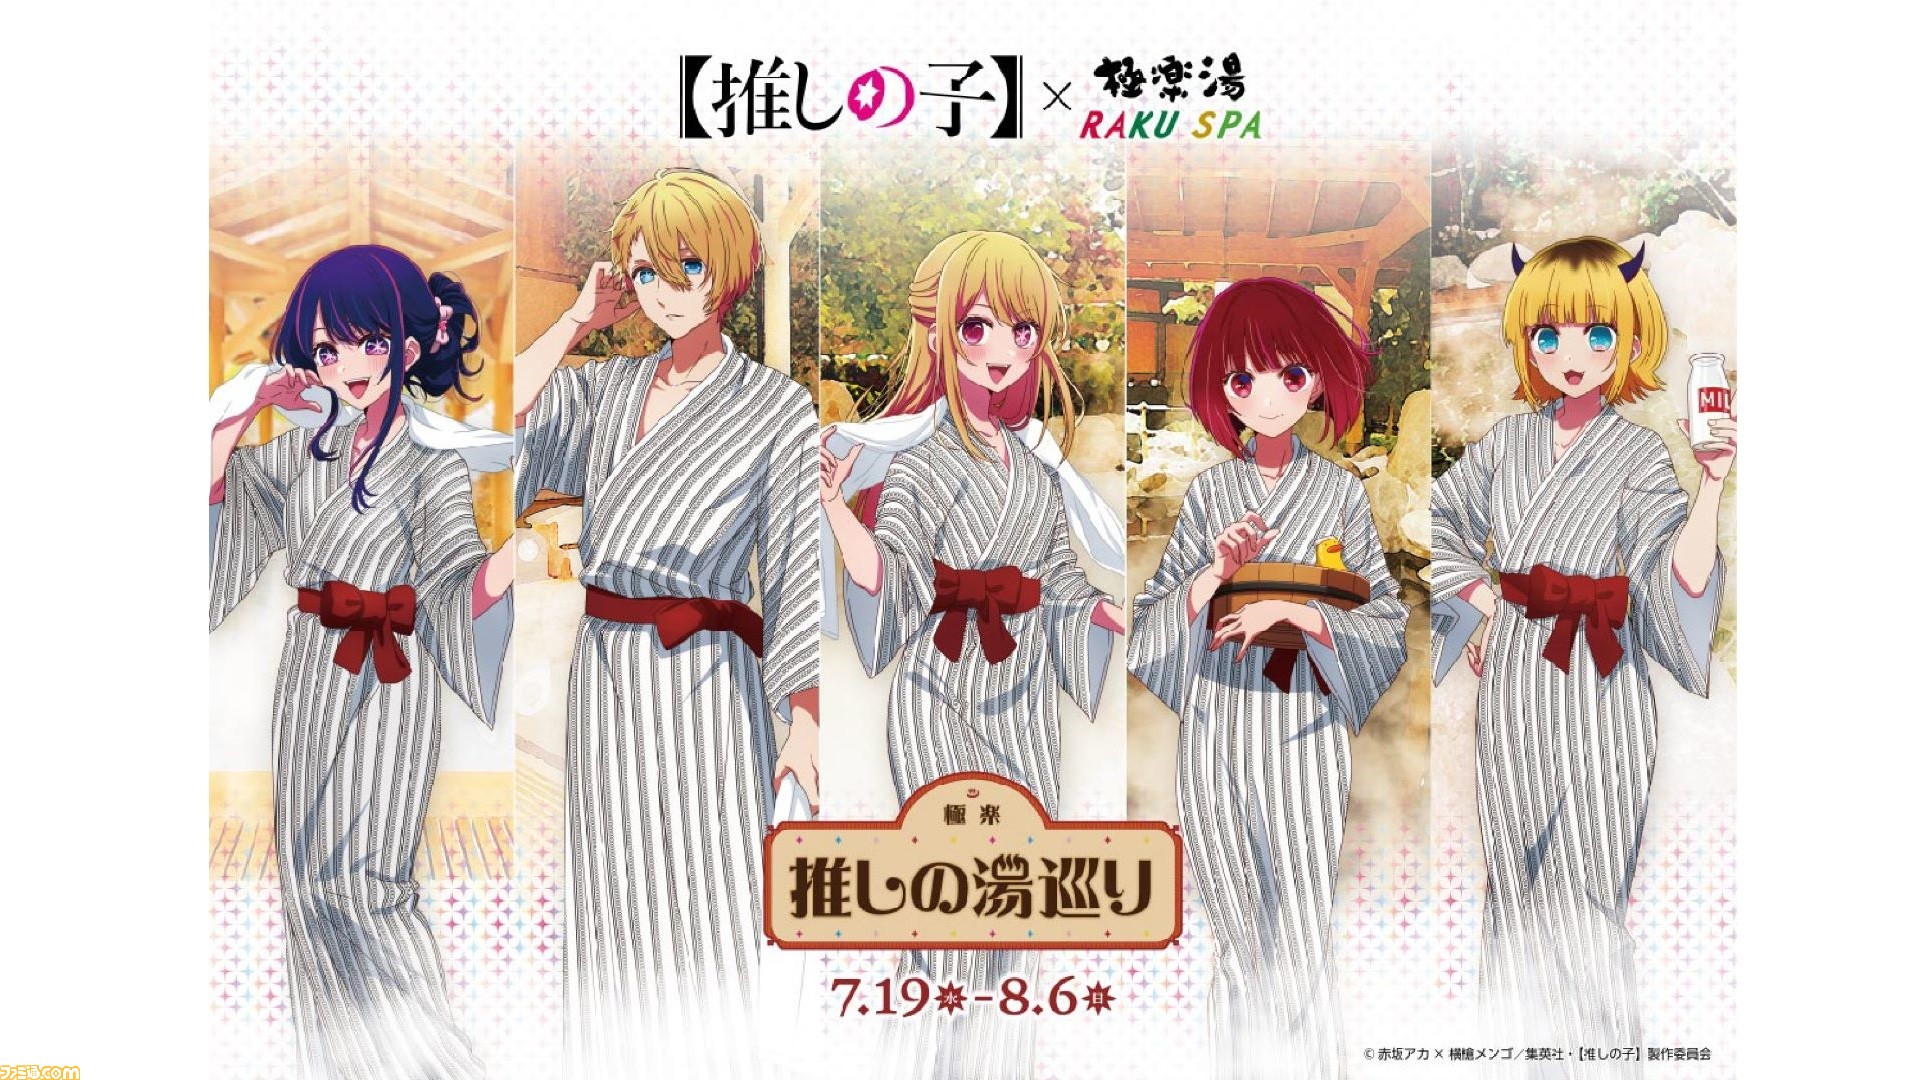 アニメ『【推しの子】』×極楽湯・RAKU SPAコラボが7月19日より開催